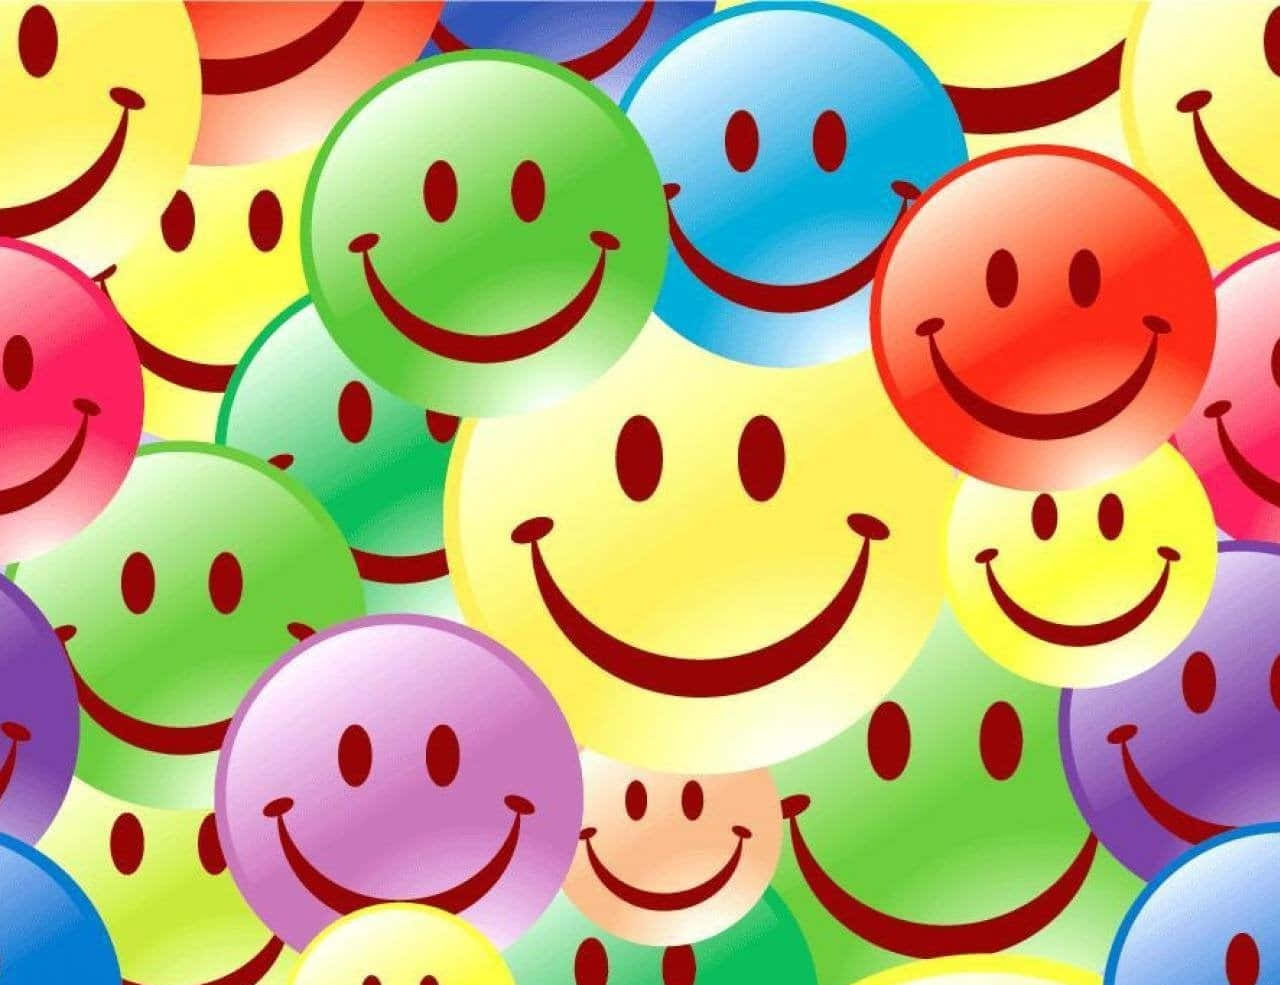 Contented Smiley Emoji